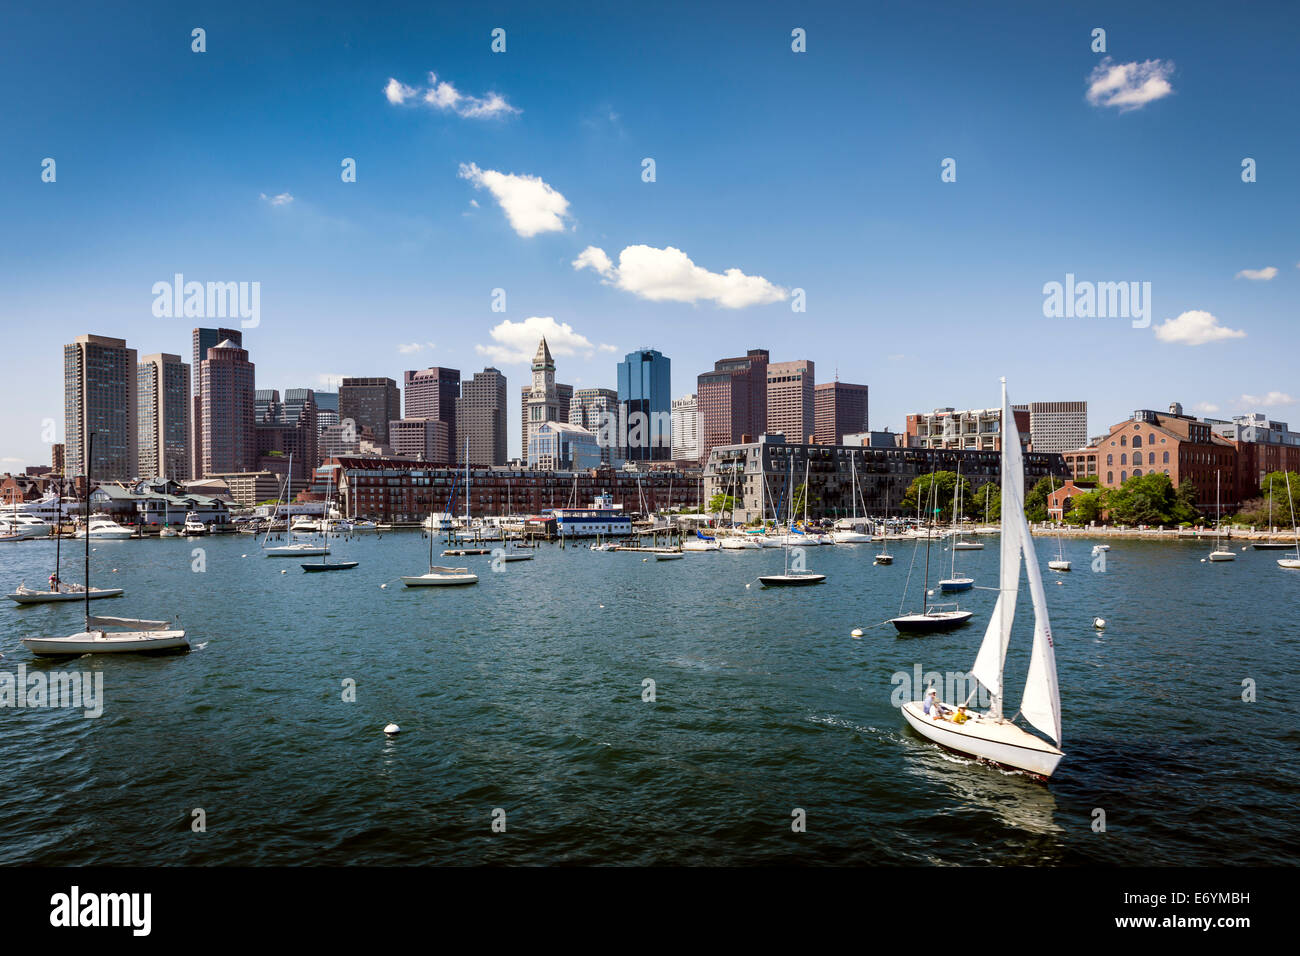 Grattacieli si elevano al di sopra del waterfront abitazioni al Porto di Boston, Massachusetts - Stati Uniti Foto Stock